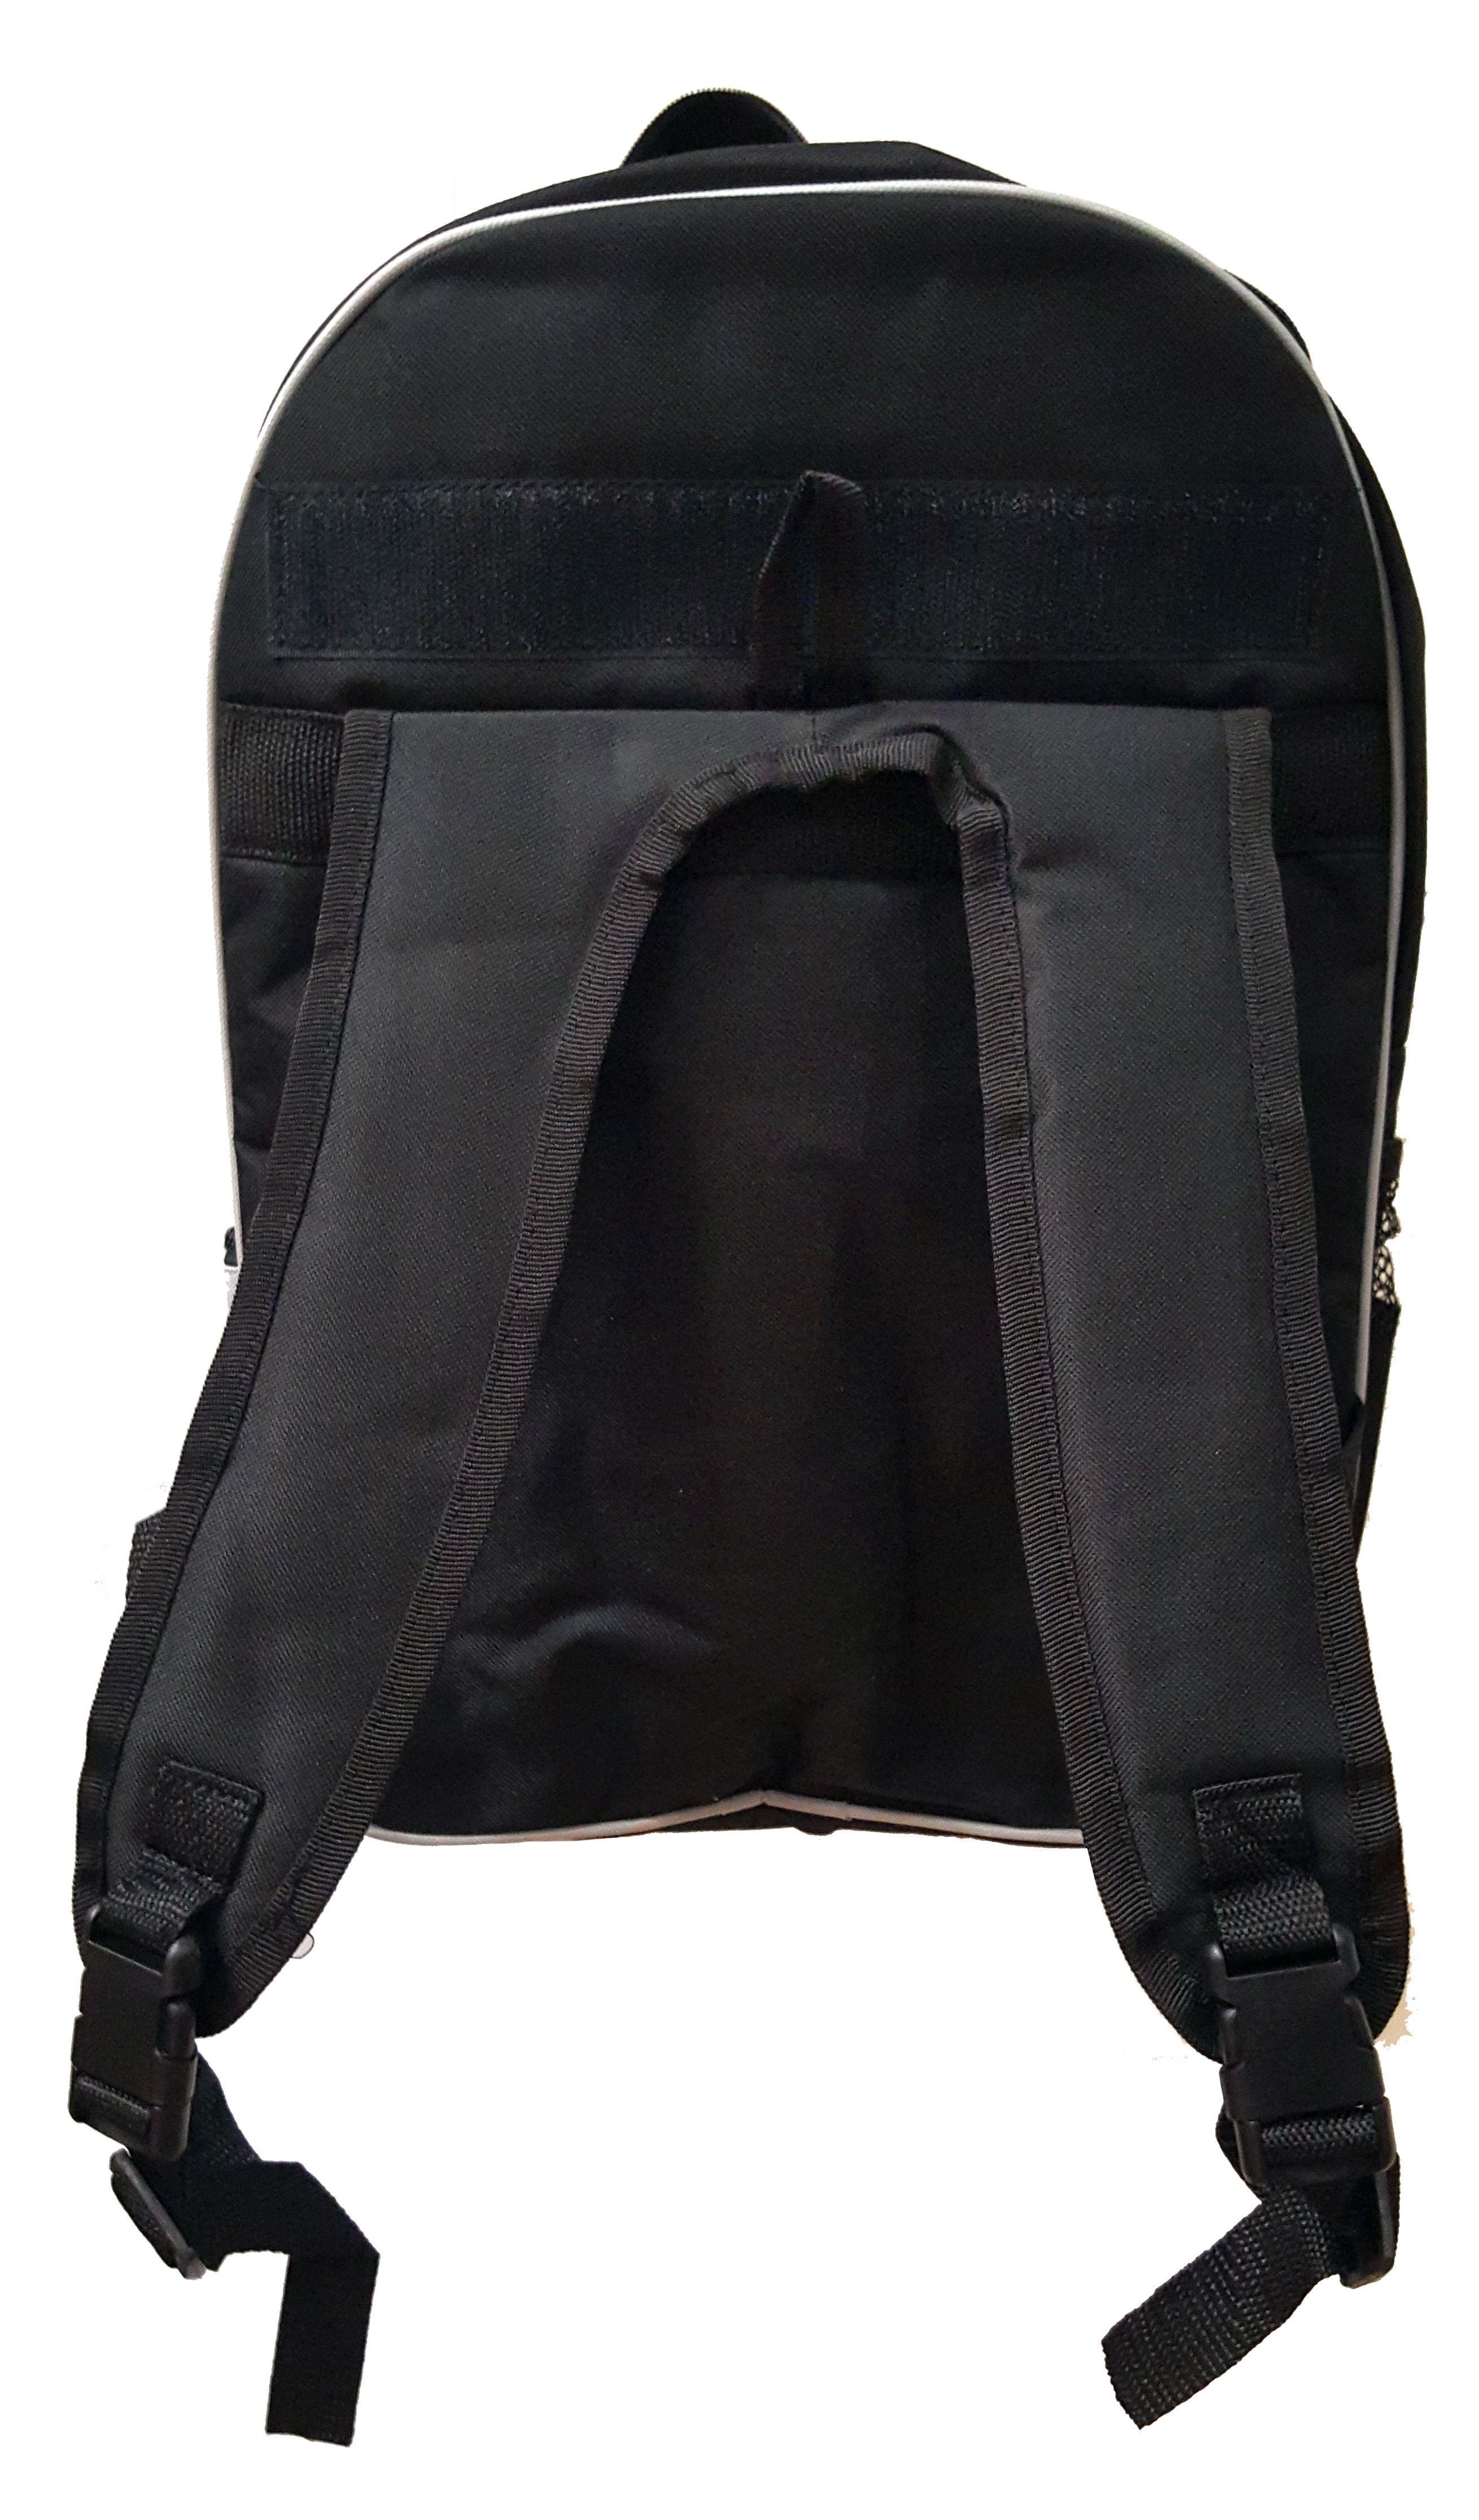 Yorkie In Pink - Large Black School Backpack - image 4 of 4